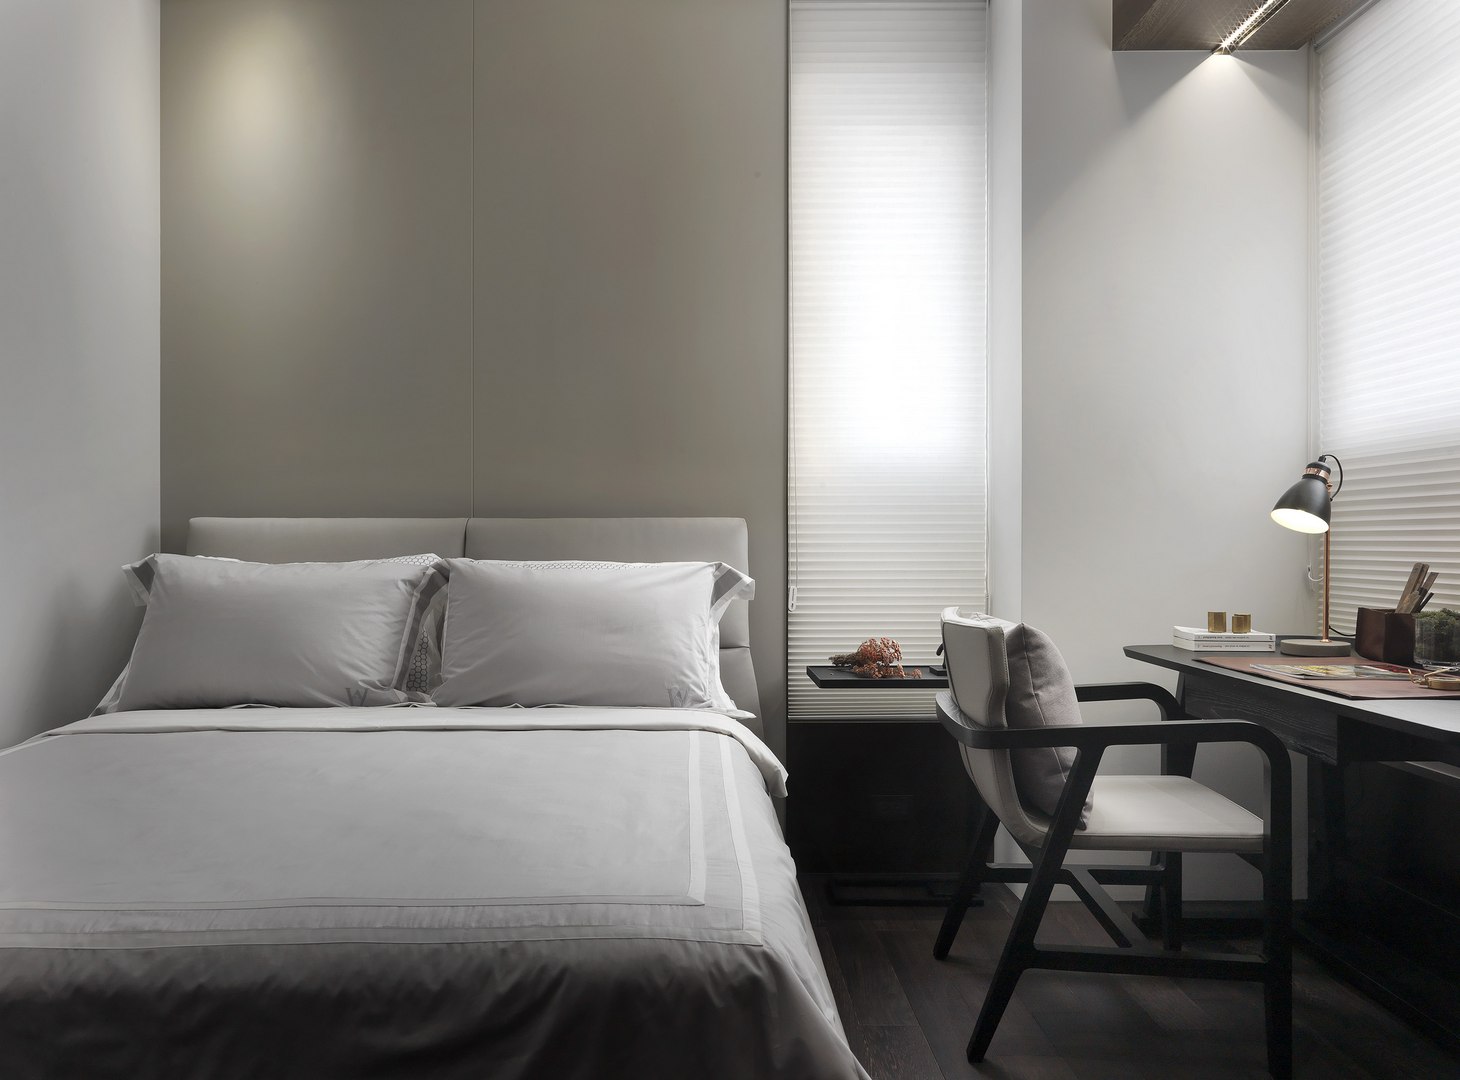 侧卧米色护墙板背景搭配简约的双人床，简约情调呼之欲出，空间舒适温馨。